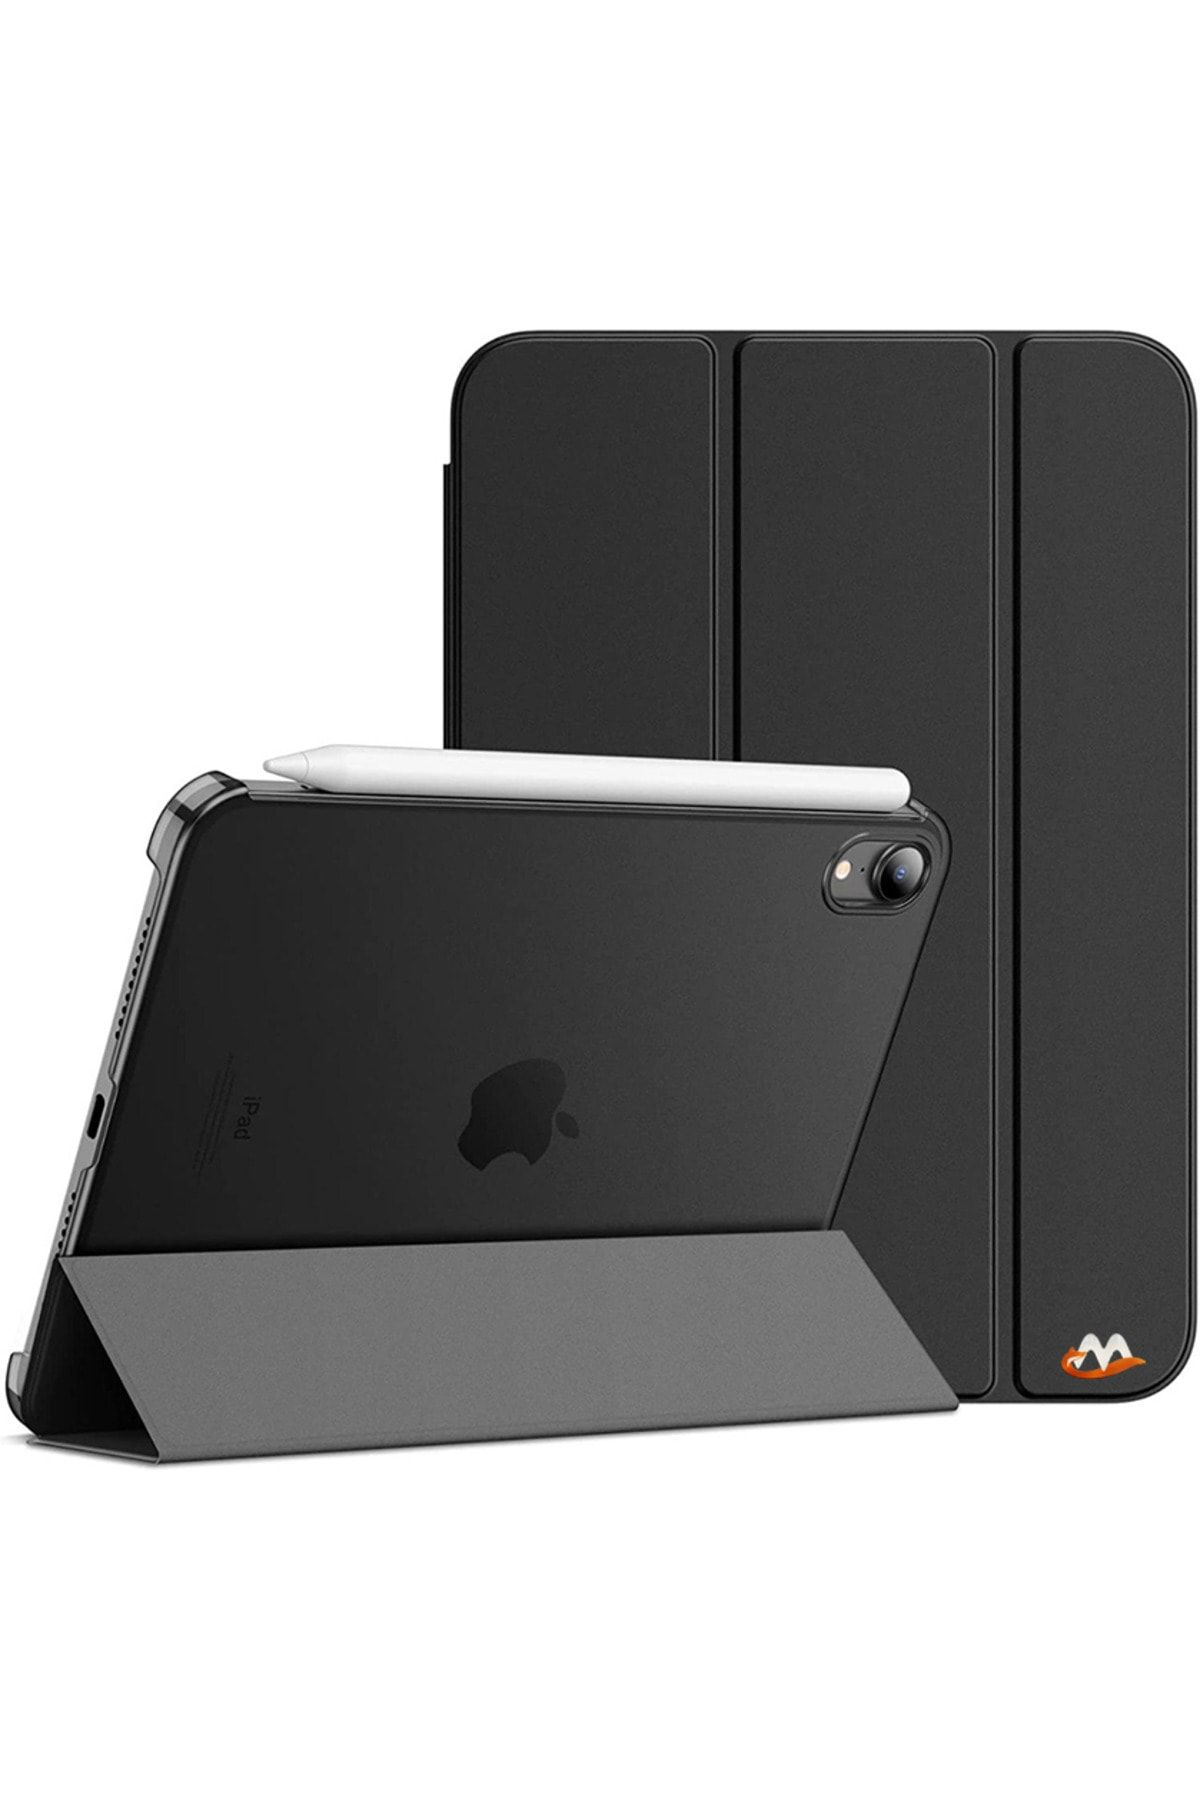 Megafox Apple Ipad Mini 6 8.3'' Uyumlu Standlı Katlanabilir Smart Cover Akıllı Tablet Kılıfı